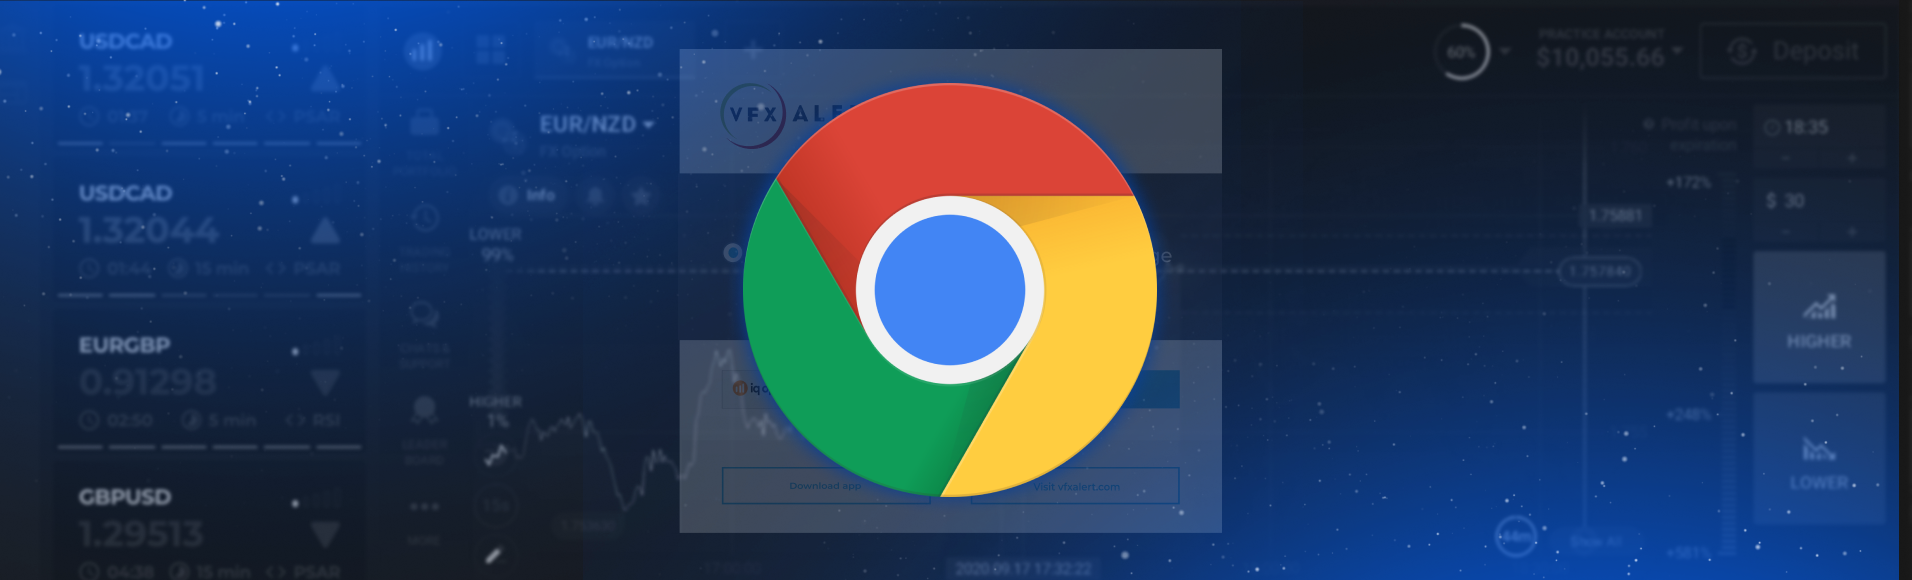 Сигналы vfxAlert в браузере Chrome